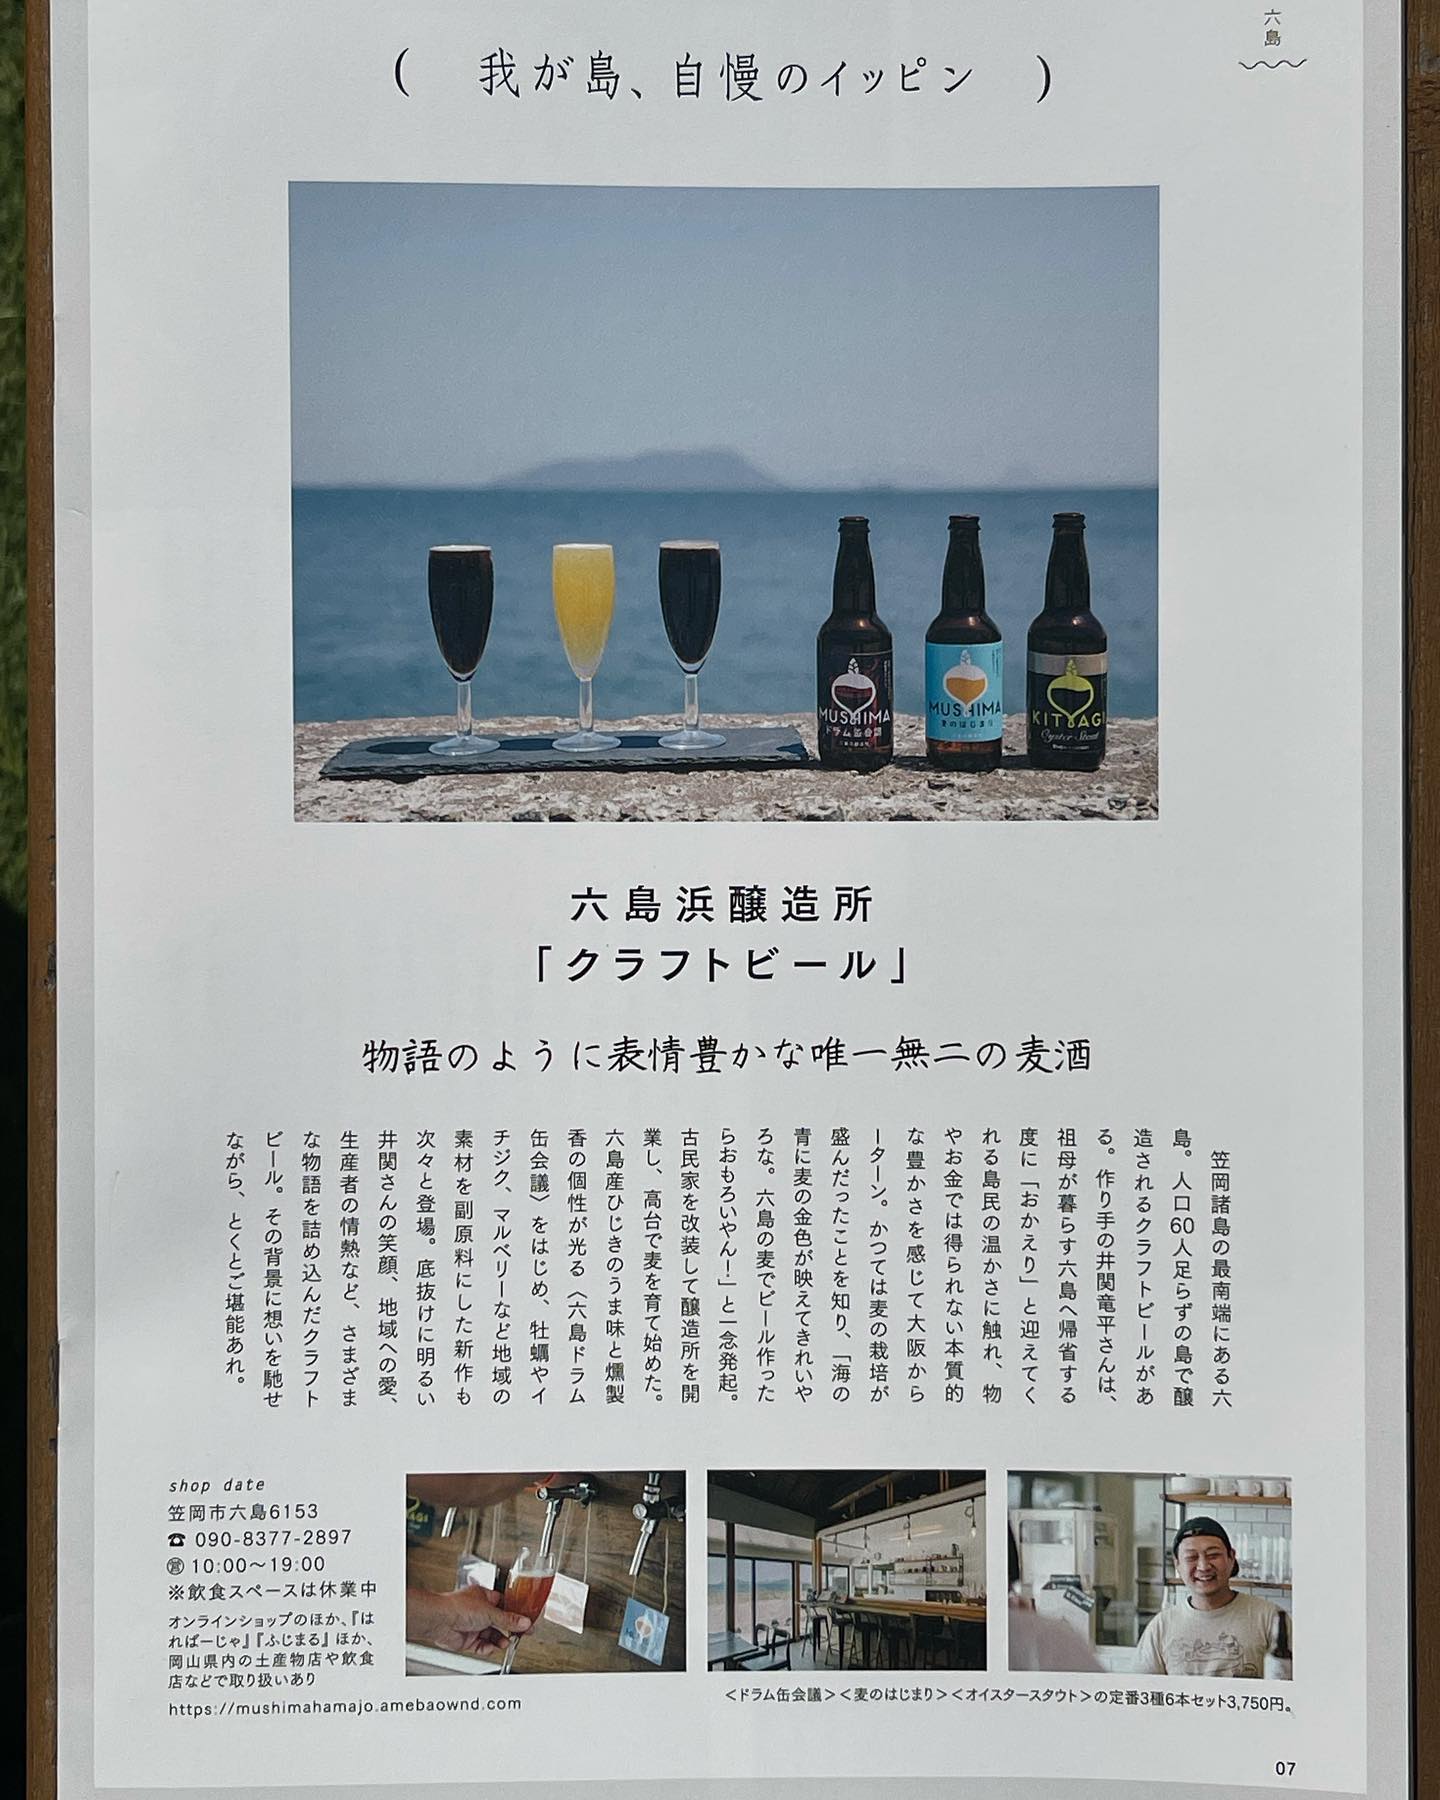 続きまして笠岡六島にある醸造所のご紹介🙂#クラフトビール#笠岡産#六島#六島ドラム缶会議#マルベリー#笠岡諸島最南端